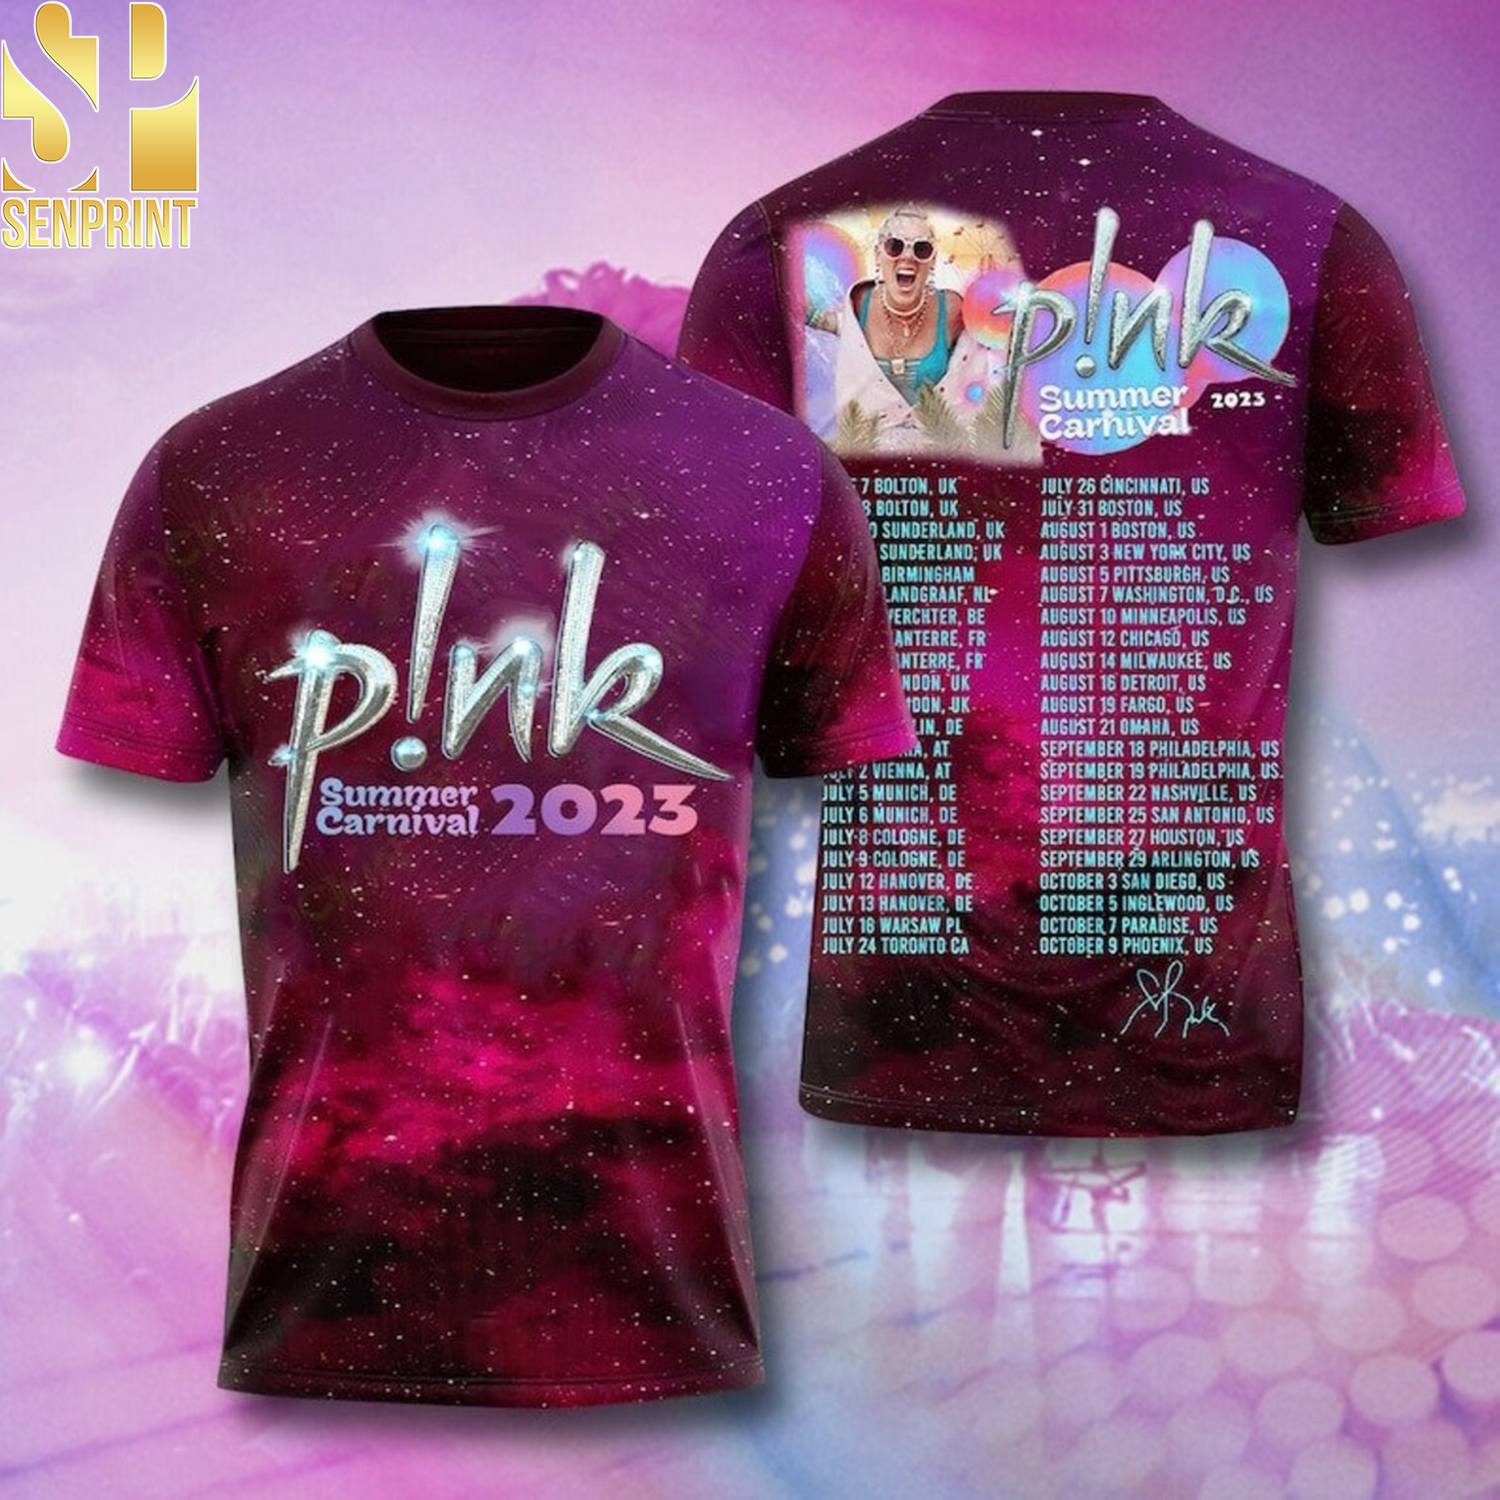 [P!NK Concert] P!nk Summer Carnival 2023 Pink Singer Tour Shirt